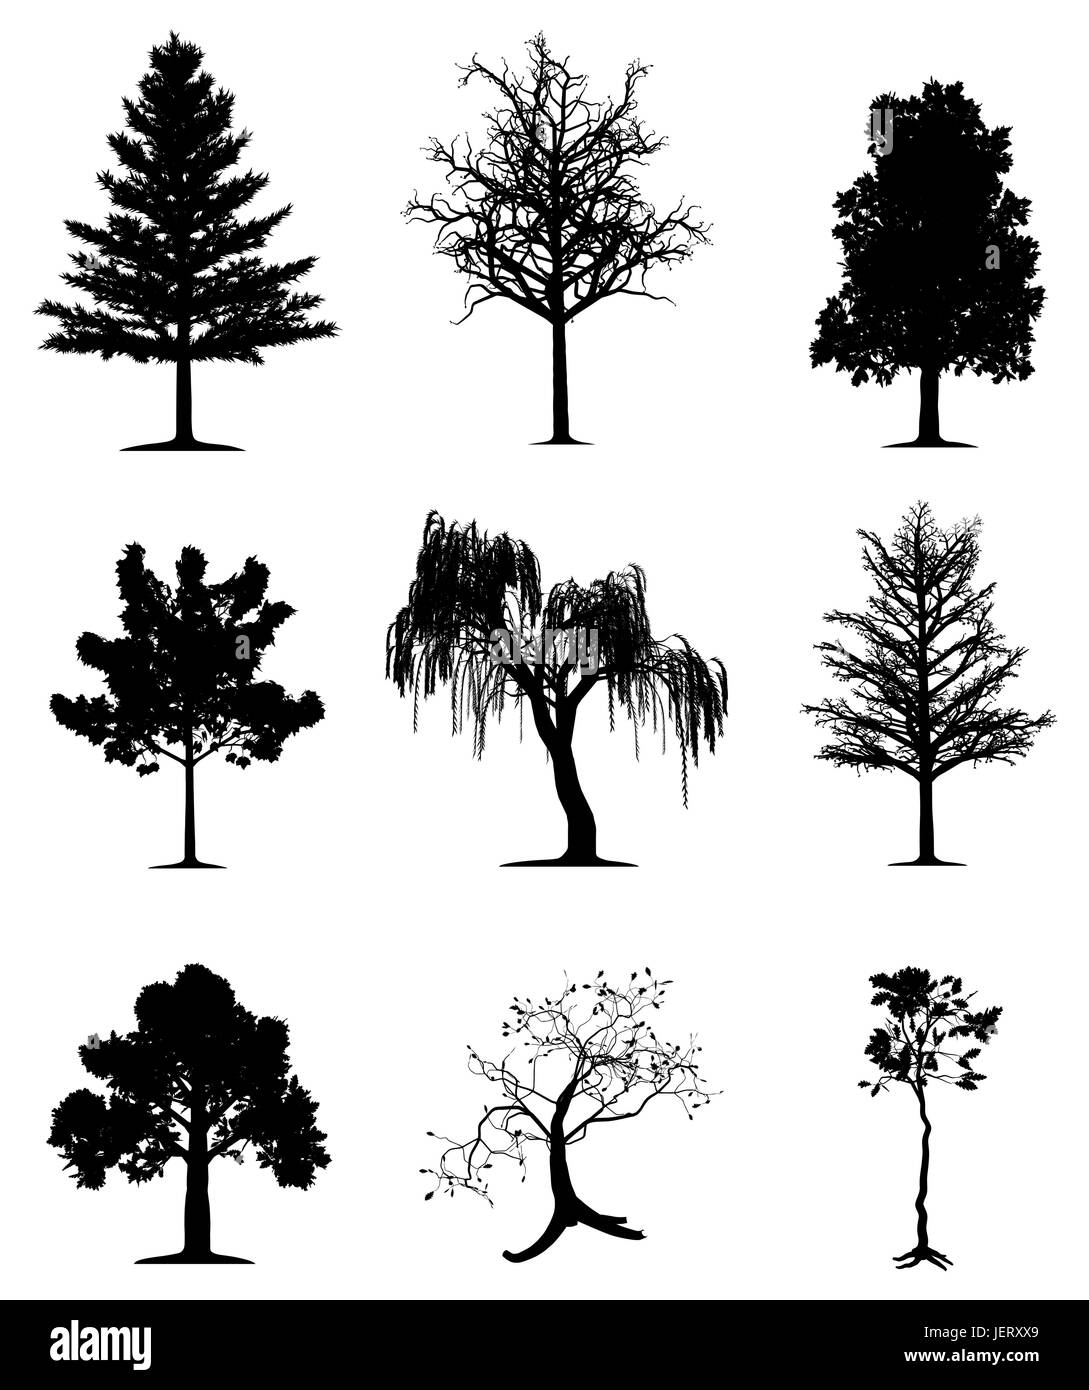 Tree, alberi di pino, quercia, silhouette, acero, salice piangente, sagome, foglia, Illustrazione Vettoriale